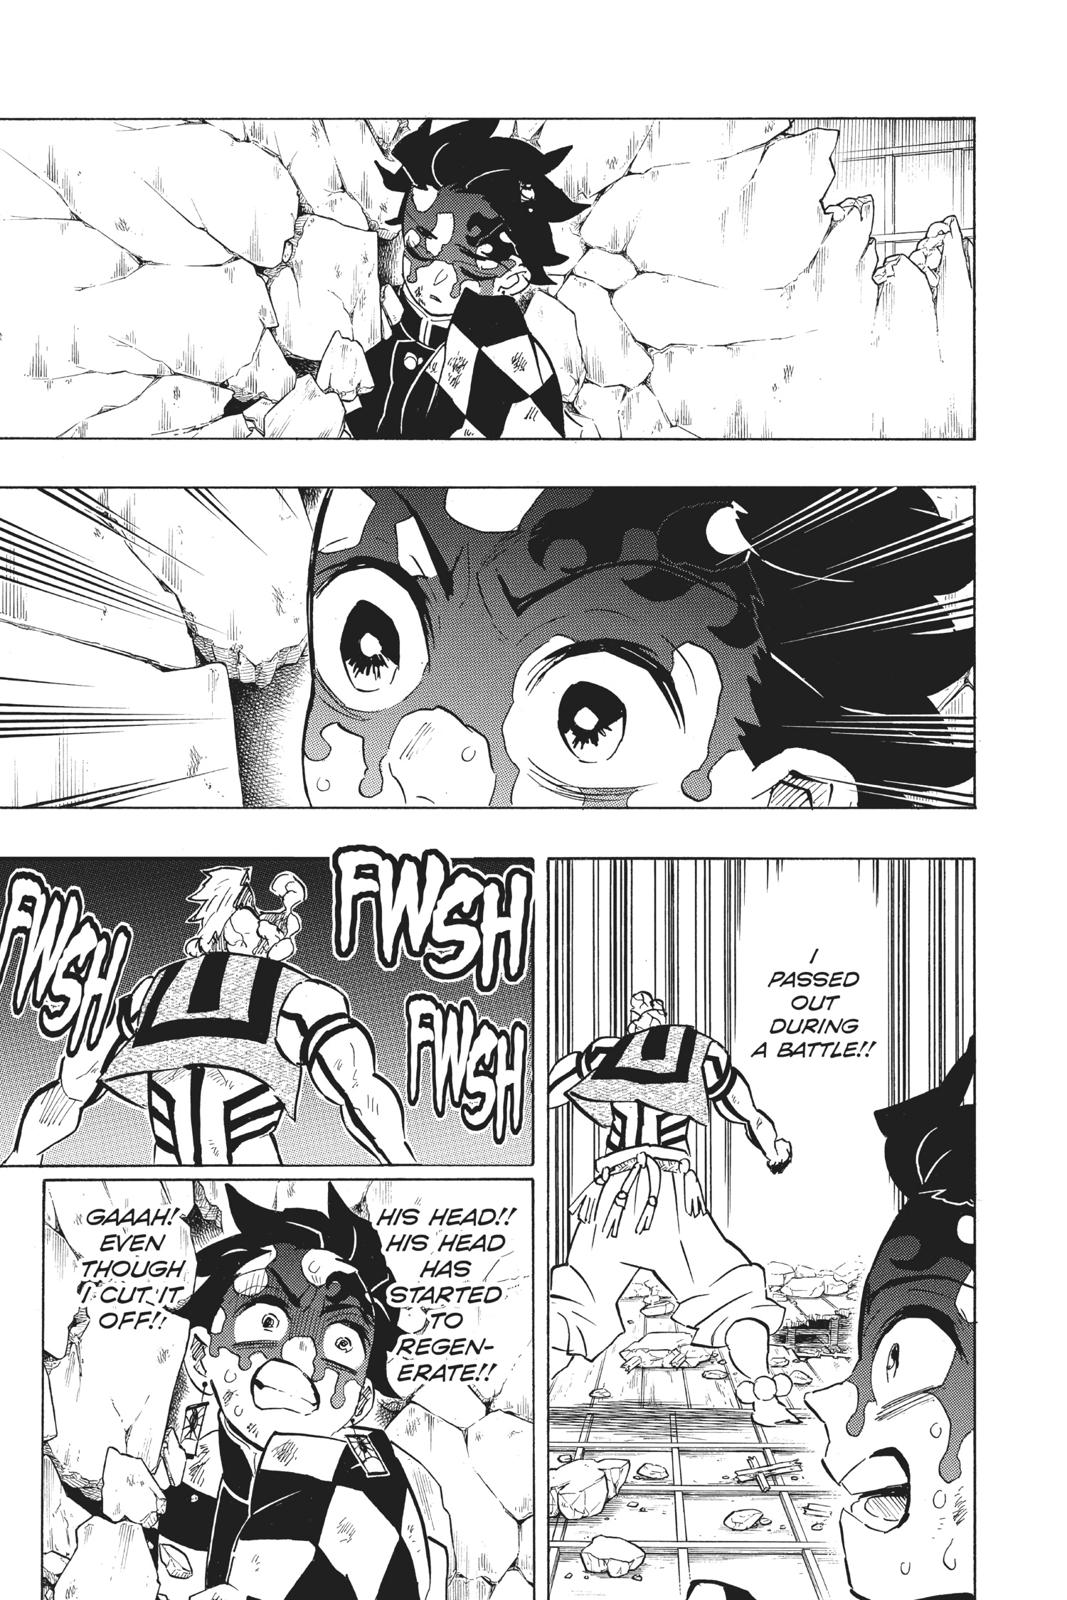 Demon Slayer Manga Manga Chapter - 156 - image 3